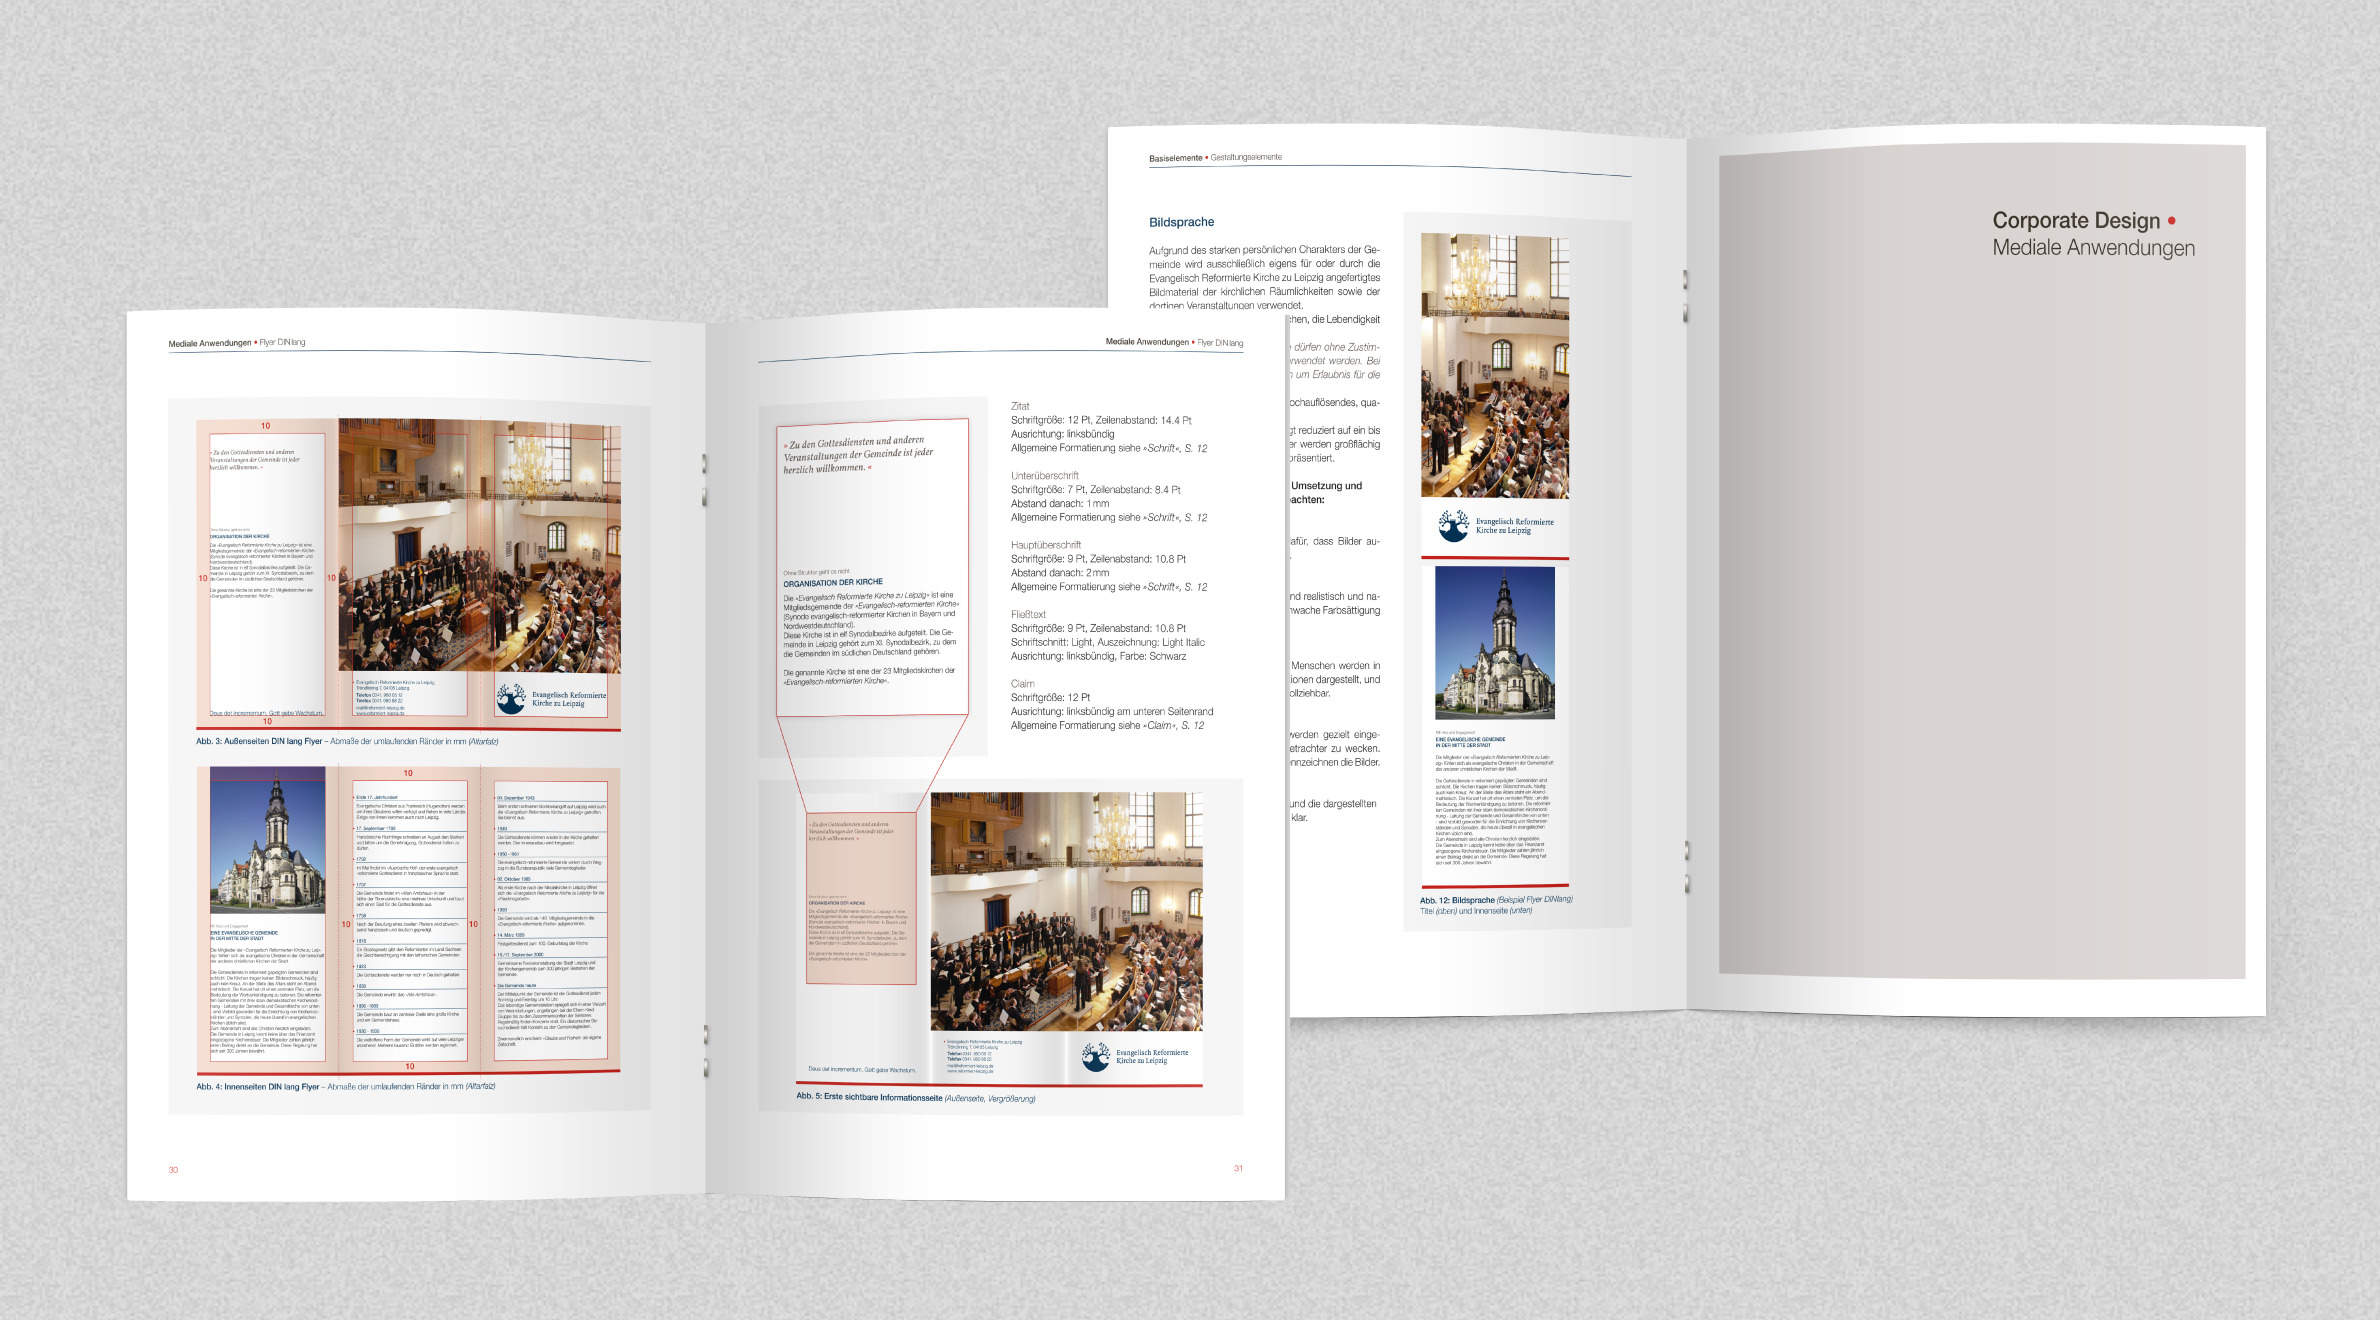 Evangelisch Reformierte Kirche zu Leipzig, Handbuch - Corporate Design